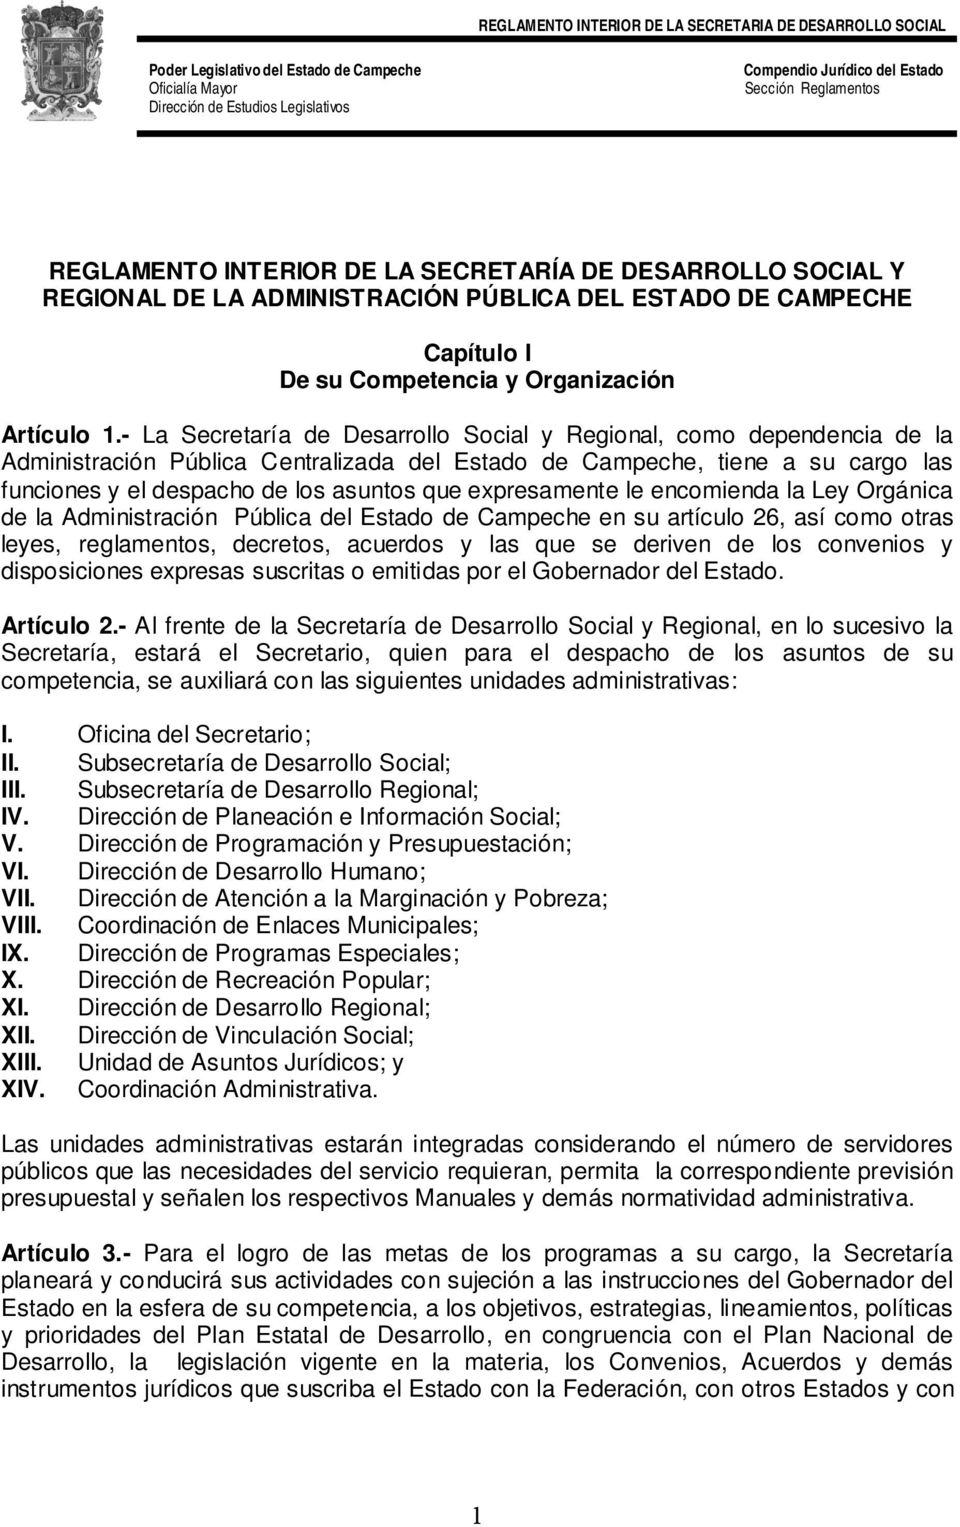 expresamente le encomienda la Ley Orgánica de la Administración Pública del Estado de Campeche en su artículo 26, así como otras leyes, reglamentos, decretos, acuerdos y las que se deriven de los